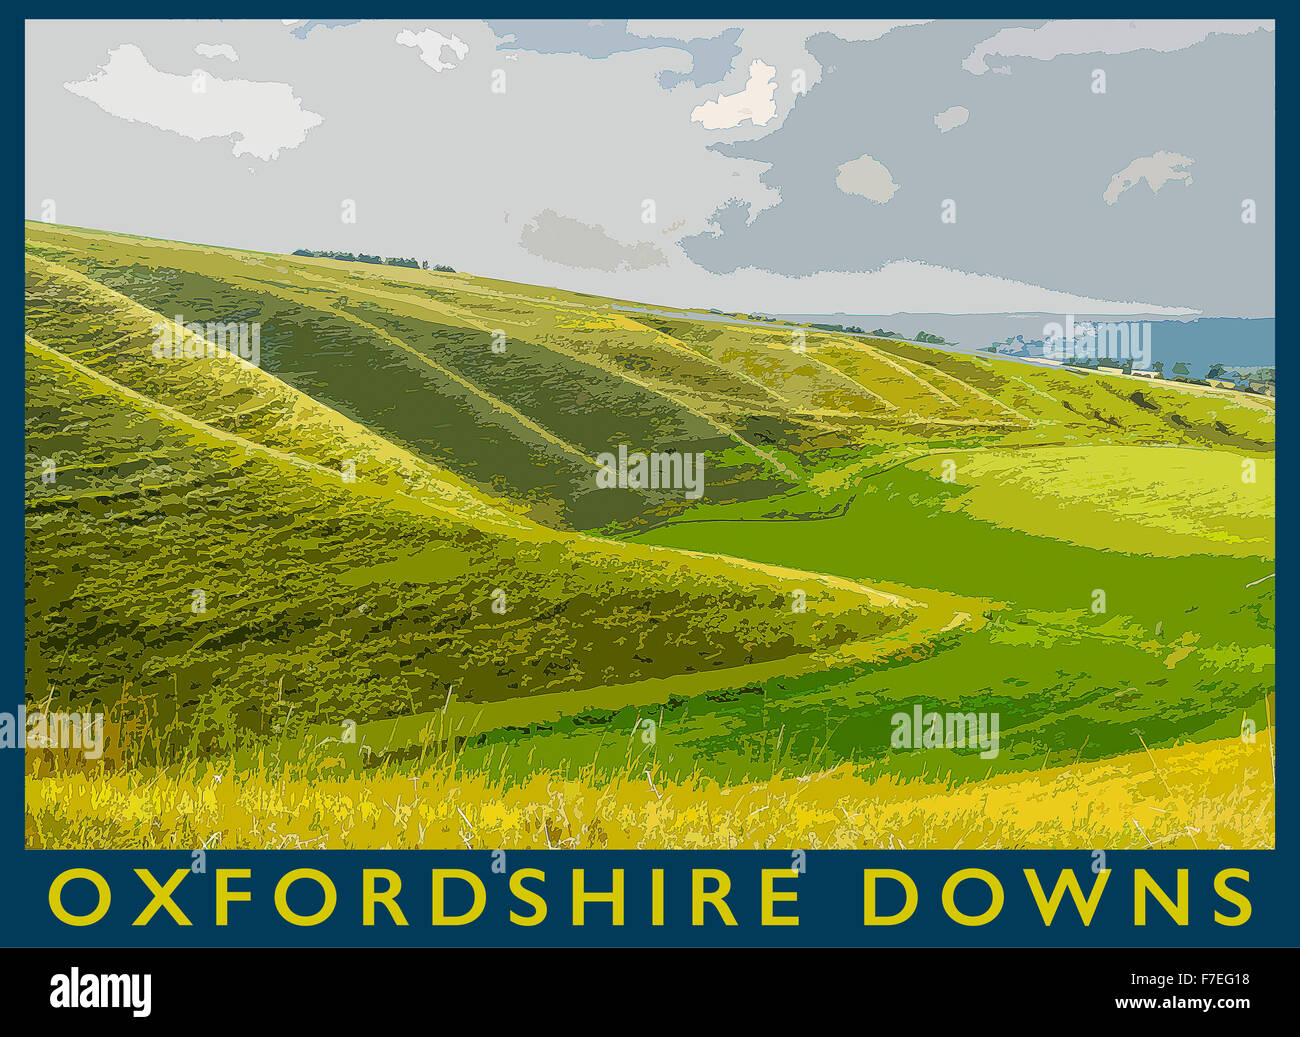 Un poster in stile illustrazione da una fotografia del Oxfordshire Downs vicino Uffington, Oxfordshire, England, Regno Unito Foto Stock